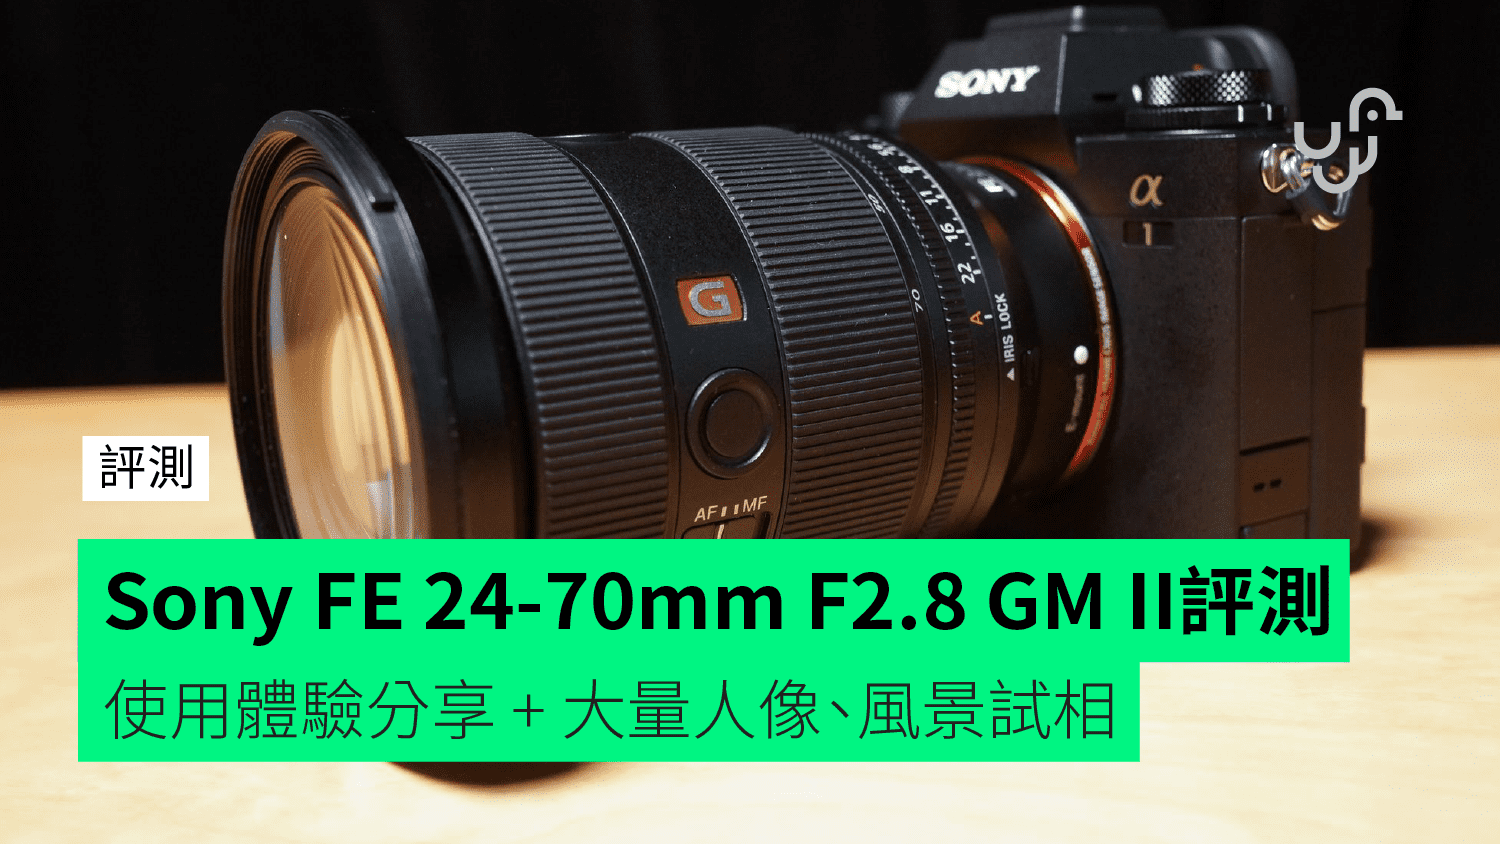 【評測】Sony FE 24-70mm F2.8 GM II 全片幅相機鏡頭 使用體驗分享 + 大量人像、風景試相 - 香港 unwire.hk